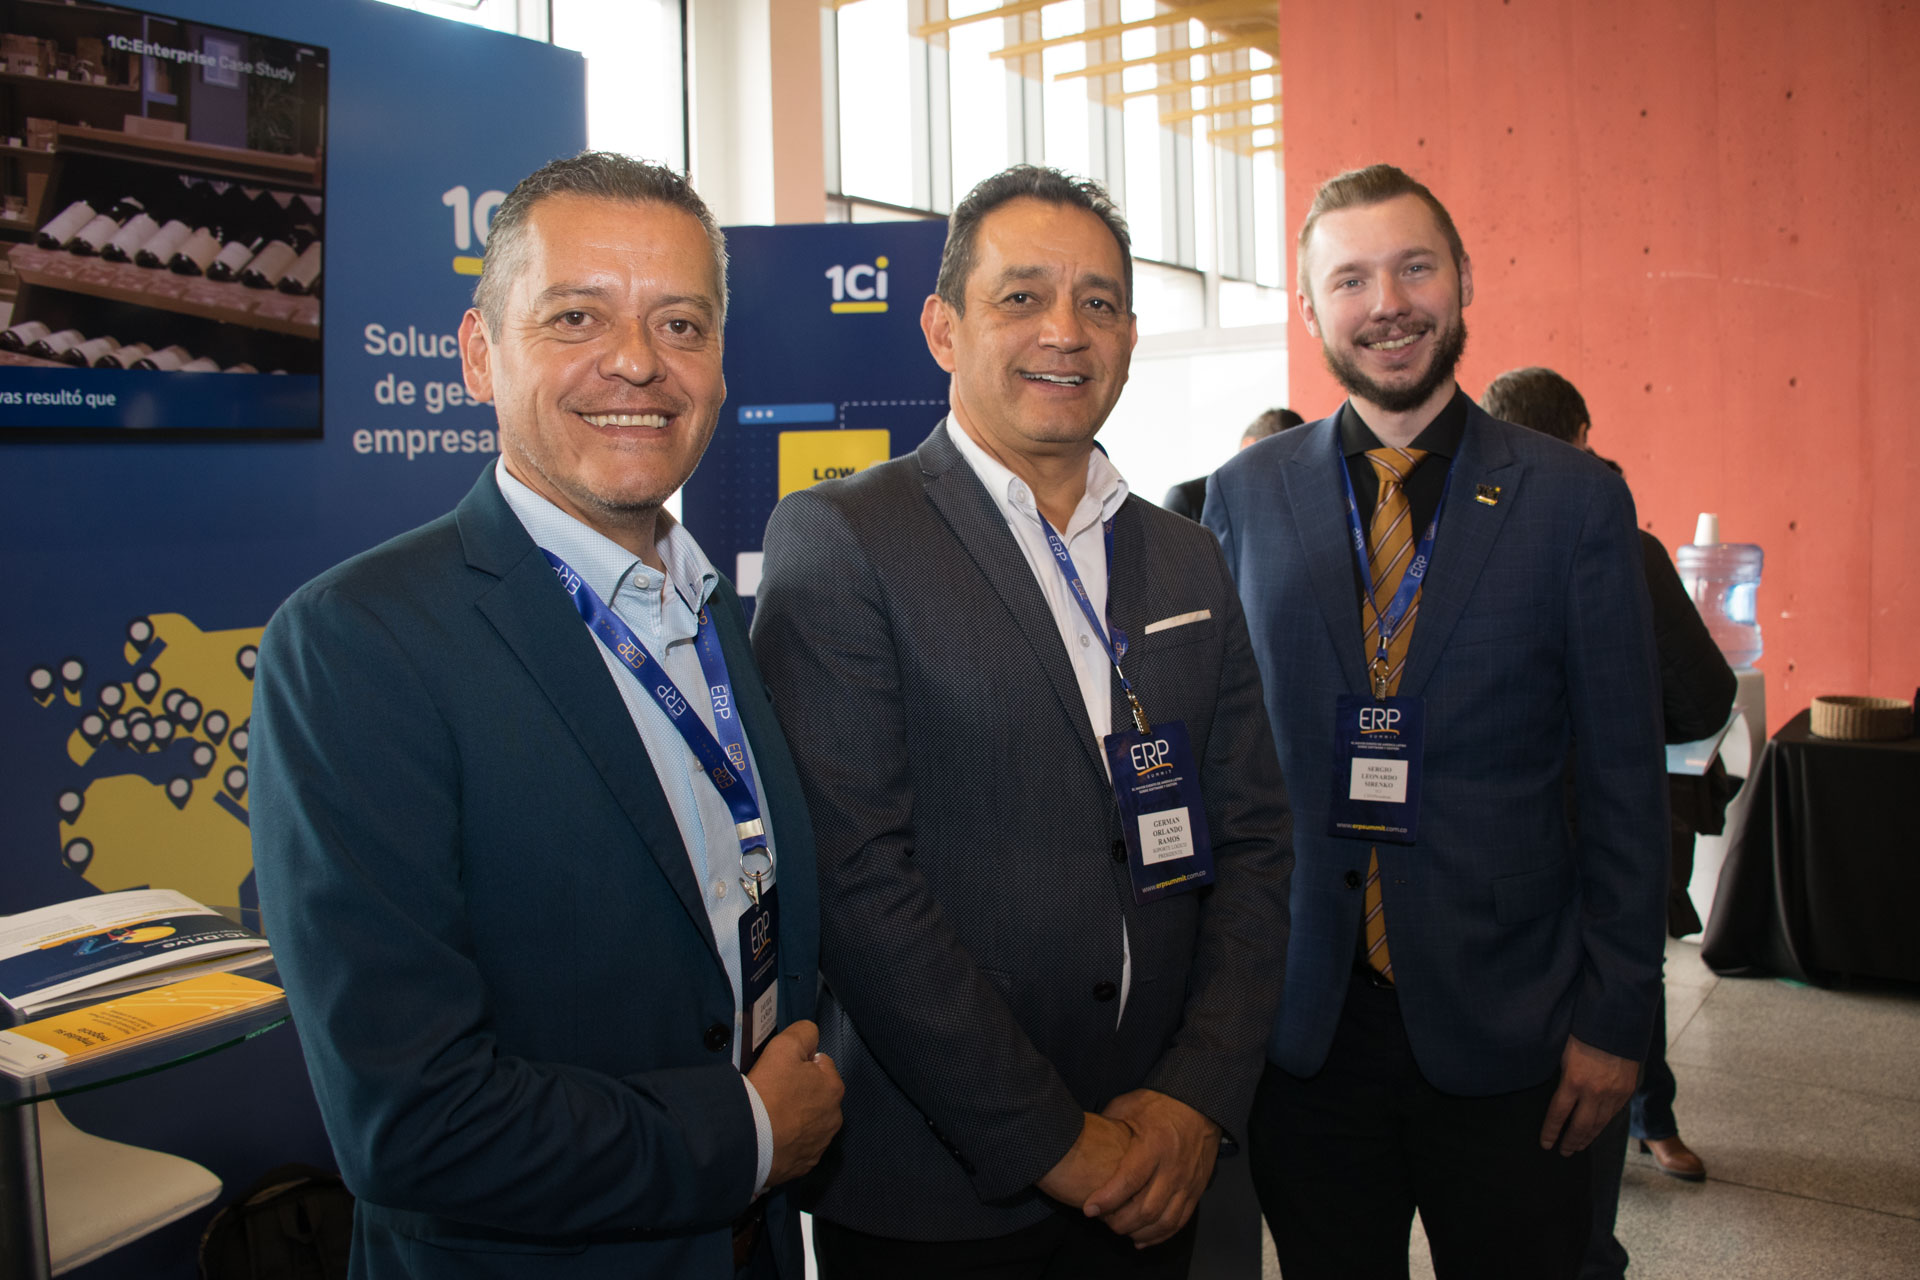  Germán Ramos, presidente junta directiva, Soporte lógico S.A.S. y Sergio Sirenko, gerente regional para Latinoamérica.